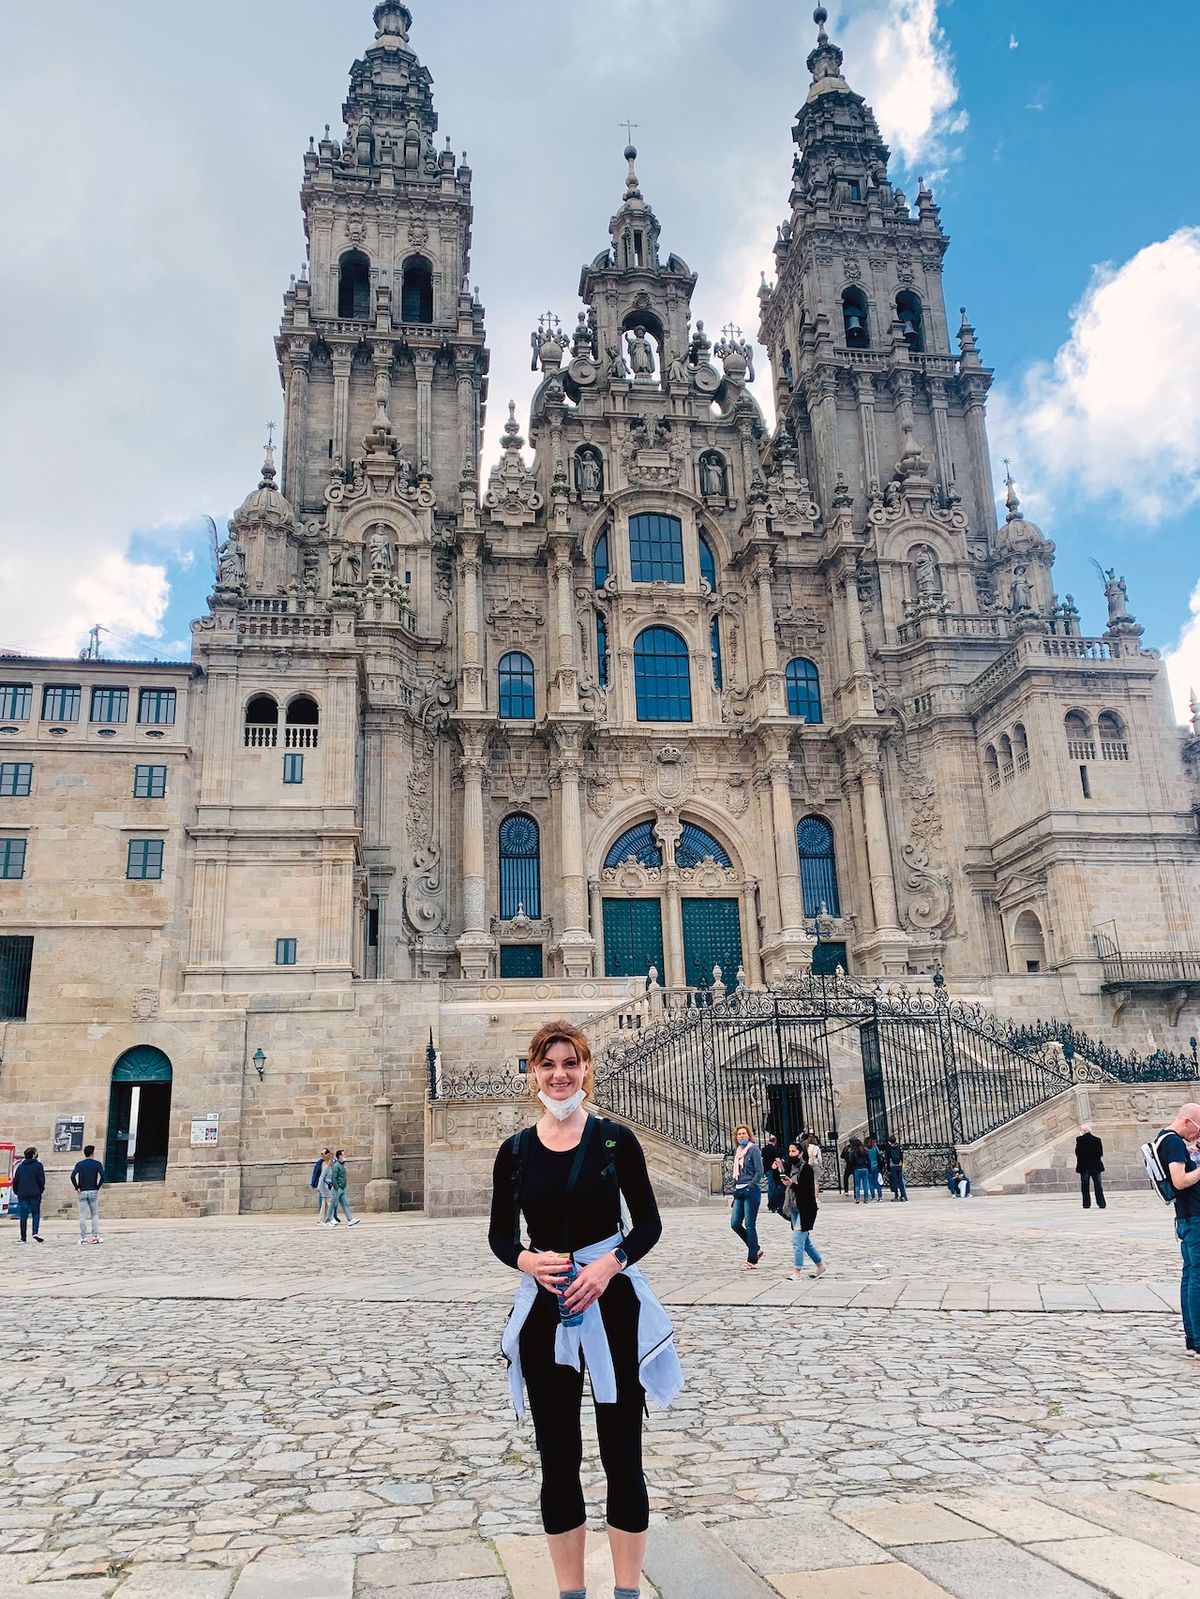 Konečně v cíli. U katedrály v Santiagu de Compostela, kam šla pěšky devět dní.